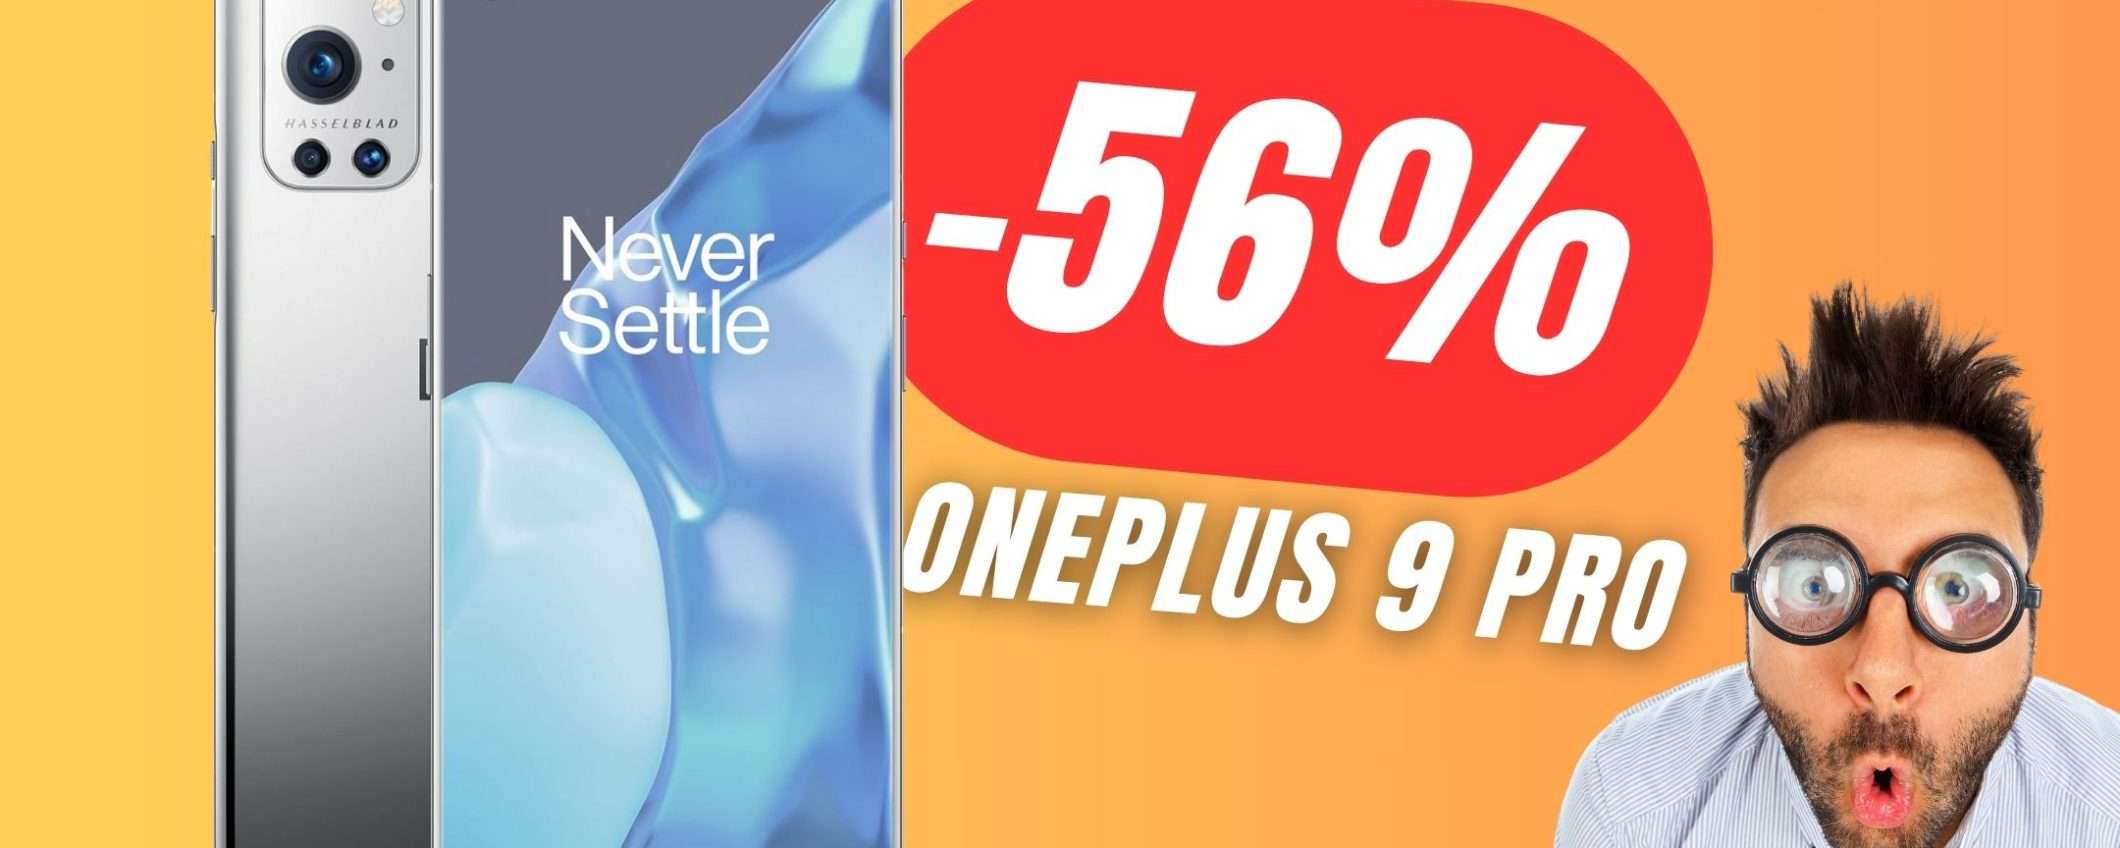 OnePlus 9 Pro CROLLA del -56% grazie allo sconto Amazon